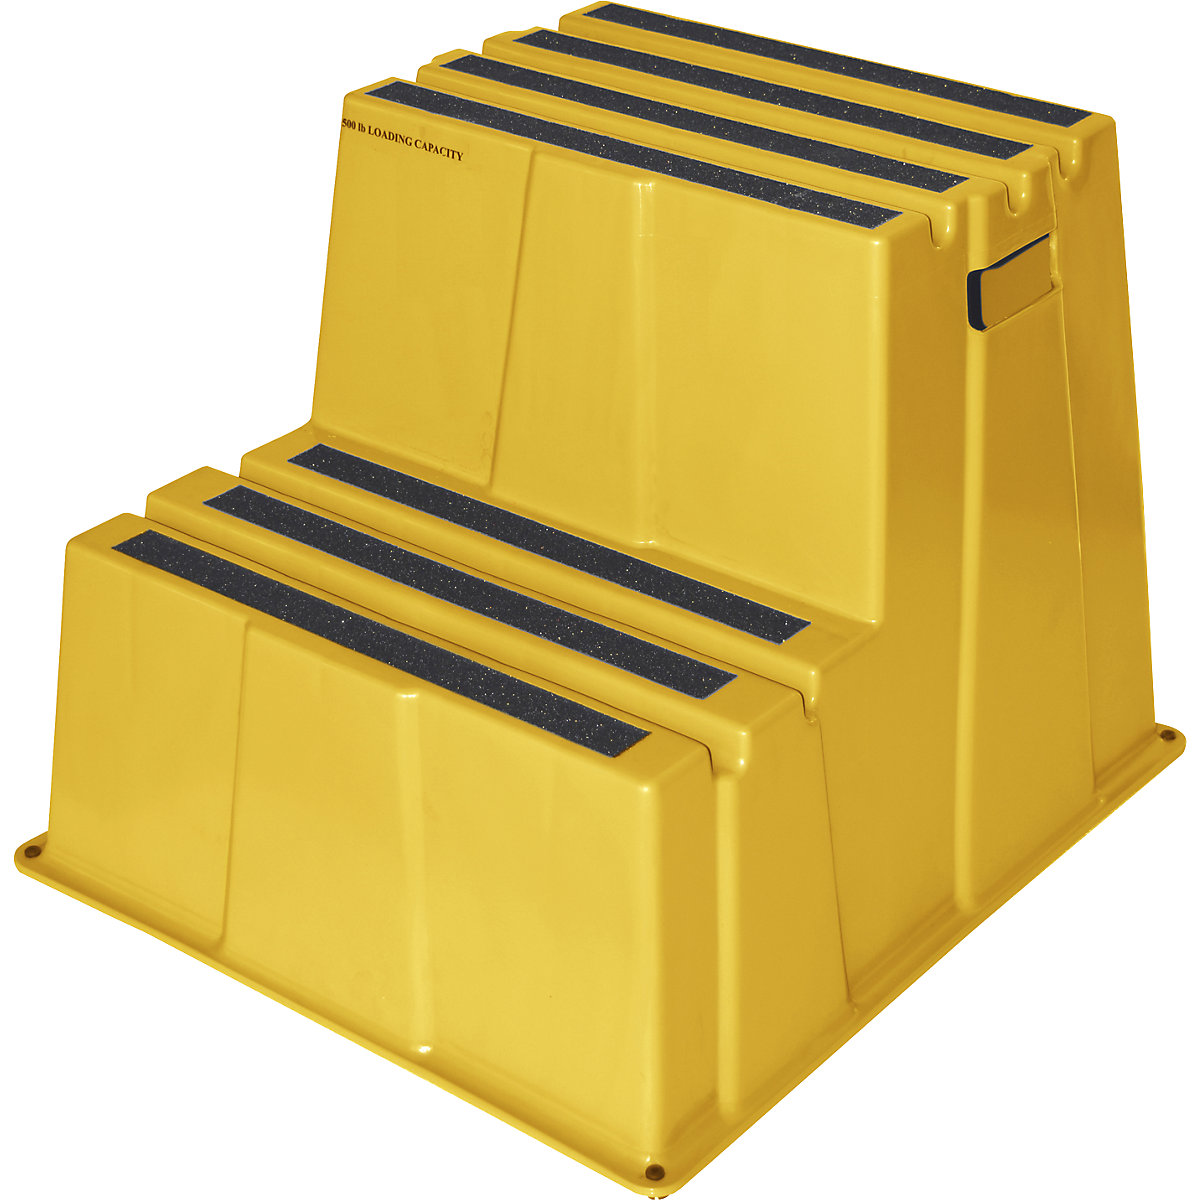 Plastične ljestve s protukliznim stepenicama – Twinco, nosivost 150 kg, 2 stepenice, u žutoj boji-9